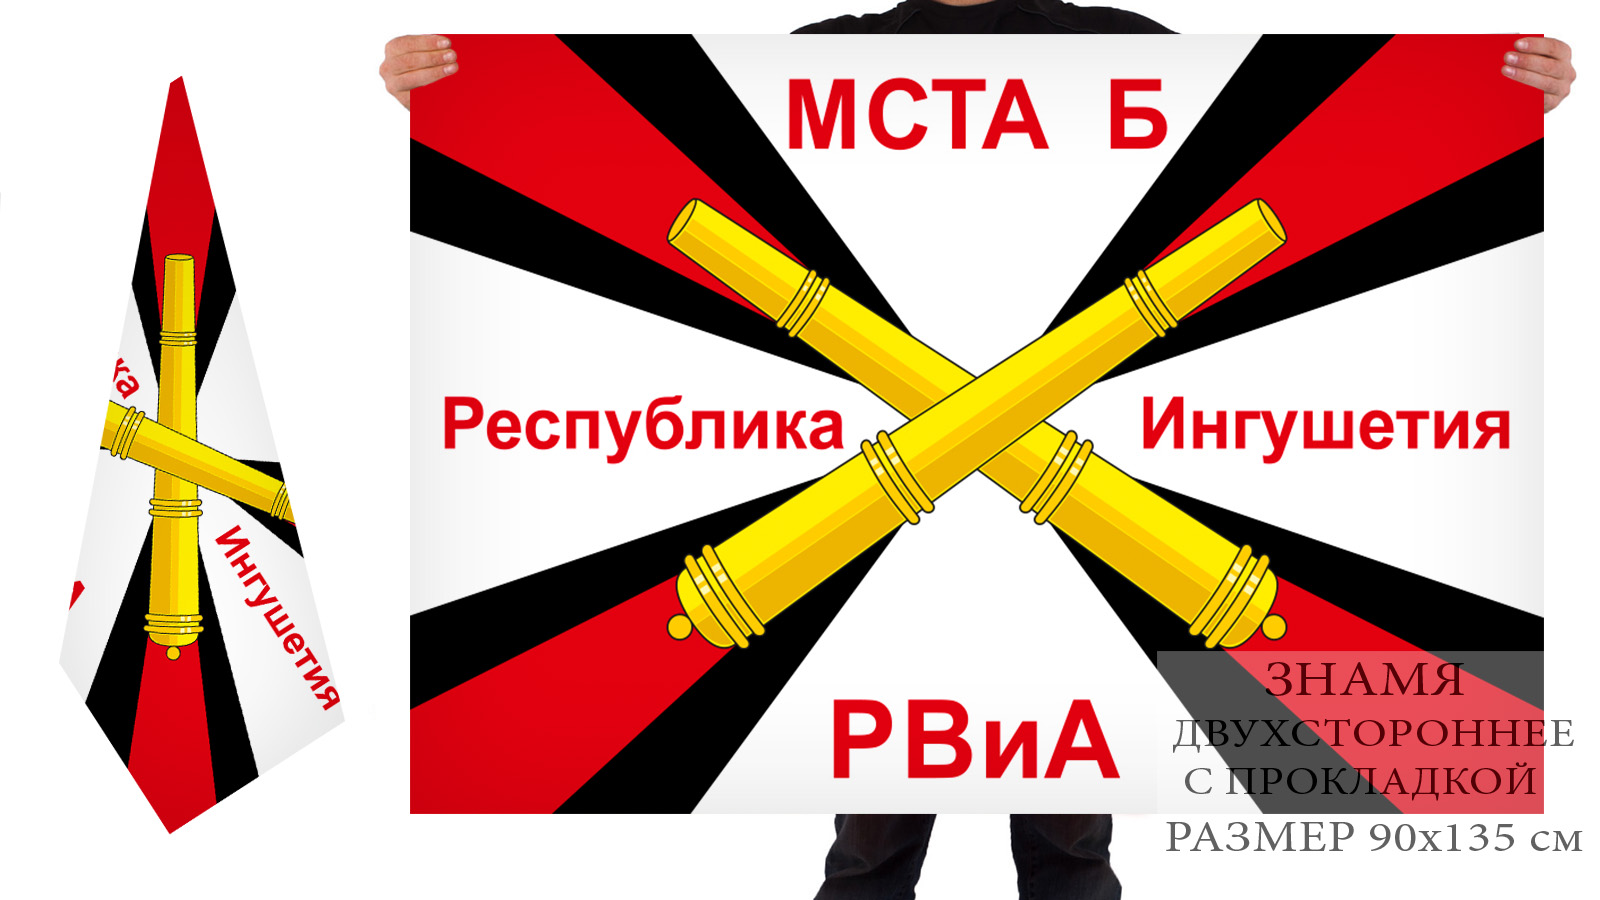 Заказать флаг РВиА Мста-Б республика Ингушетия